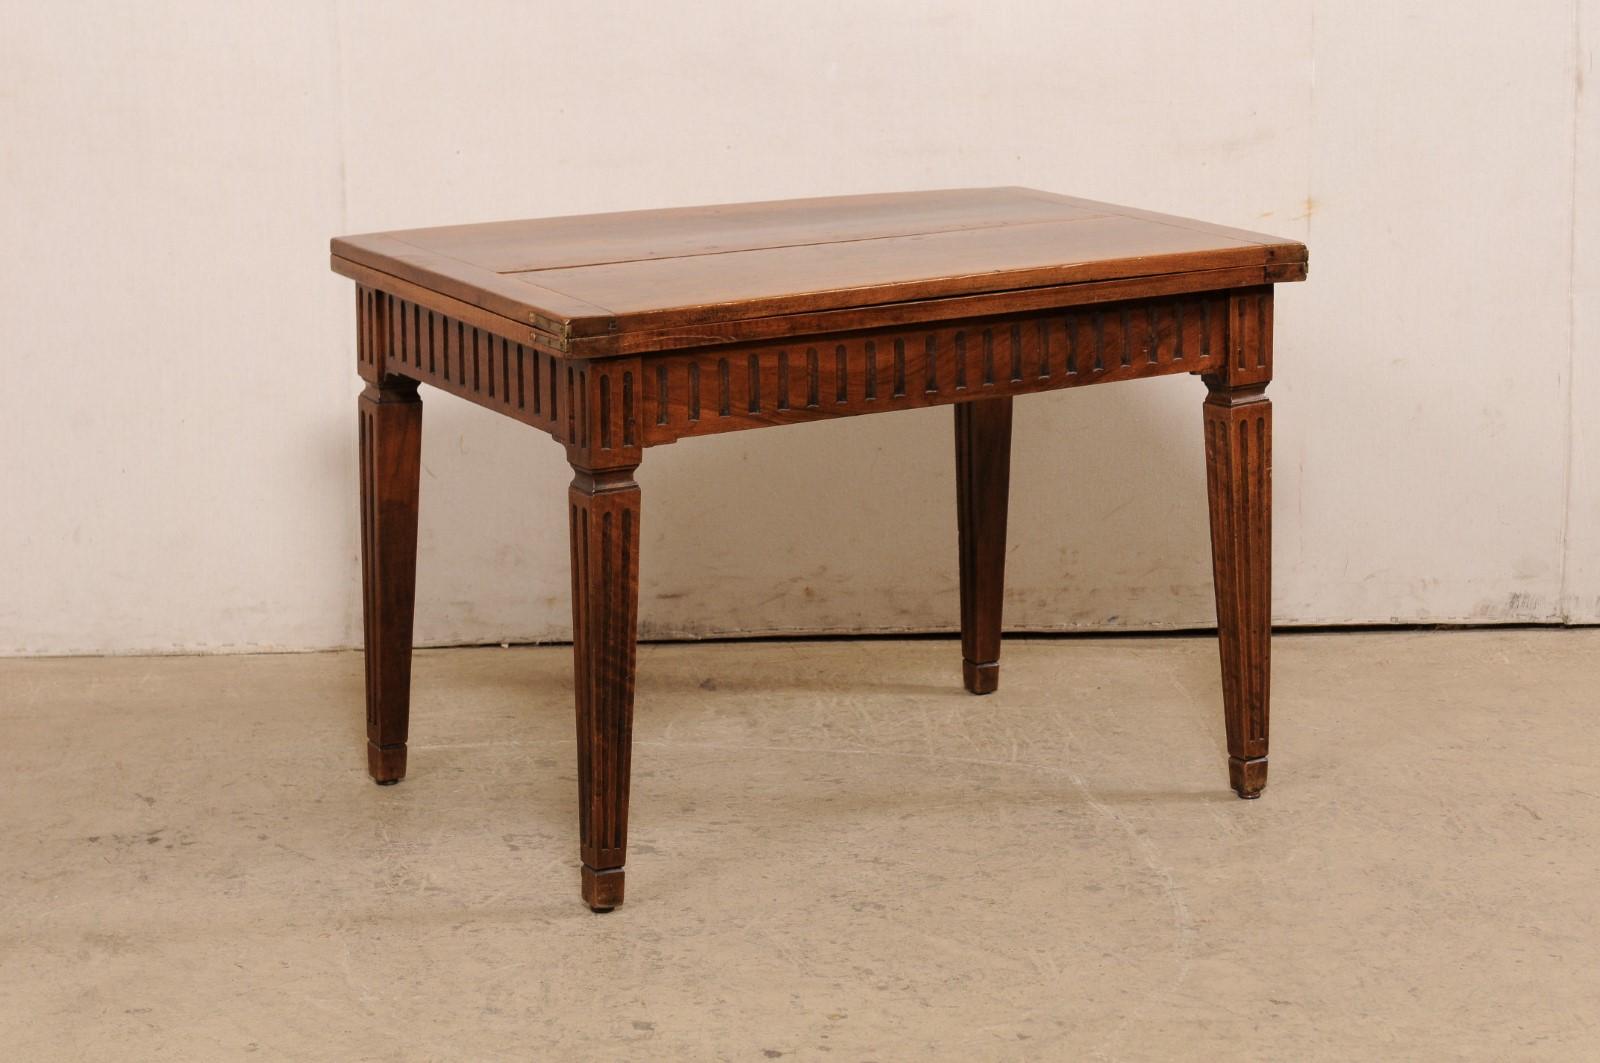 Une table italienne en bois sculpté avec plateau transitionnel/pliant du début du 20e siècle. Cette table ancienne d'Italie est dotée d'un plateau pliable en deux qui peut être déplié et tourné pour créer un plateau plus large. Des sculptures en